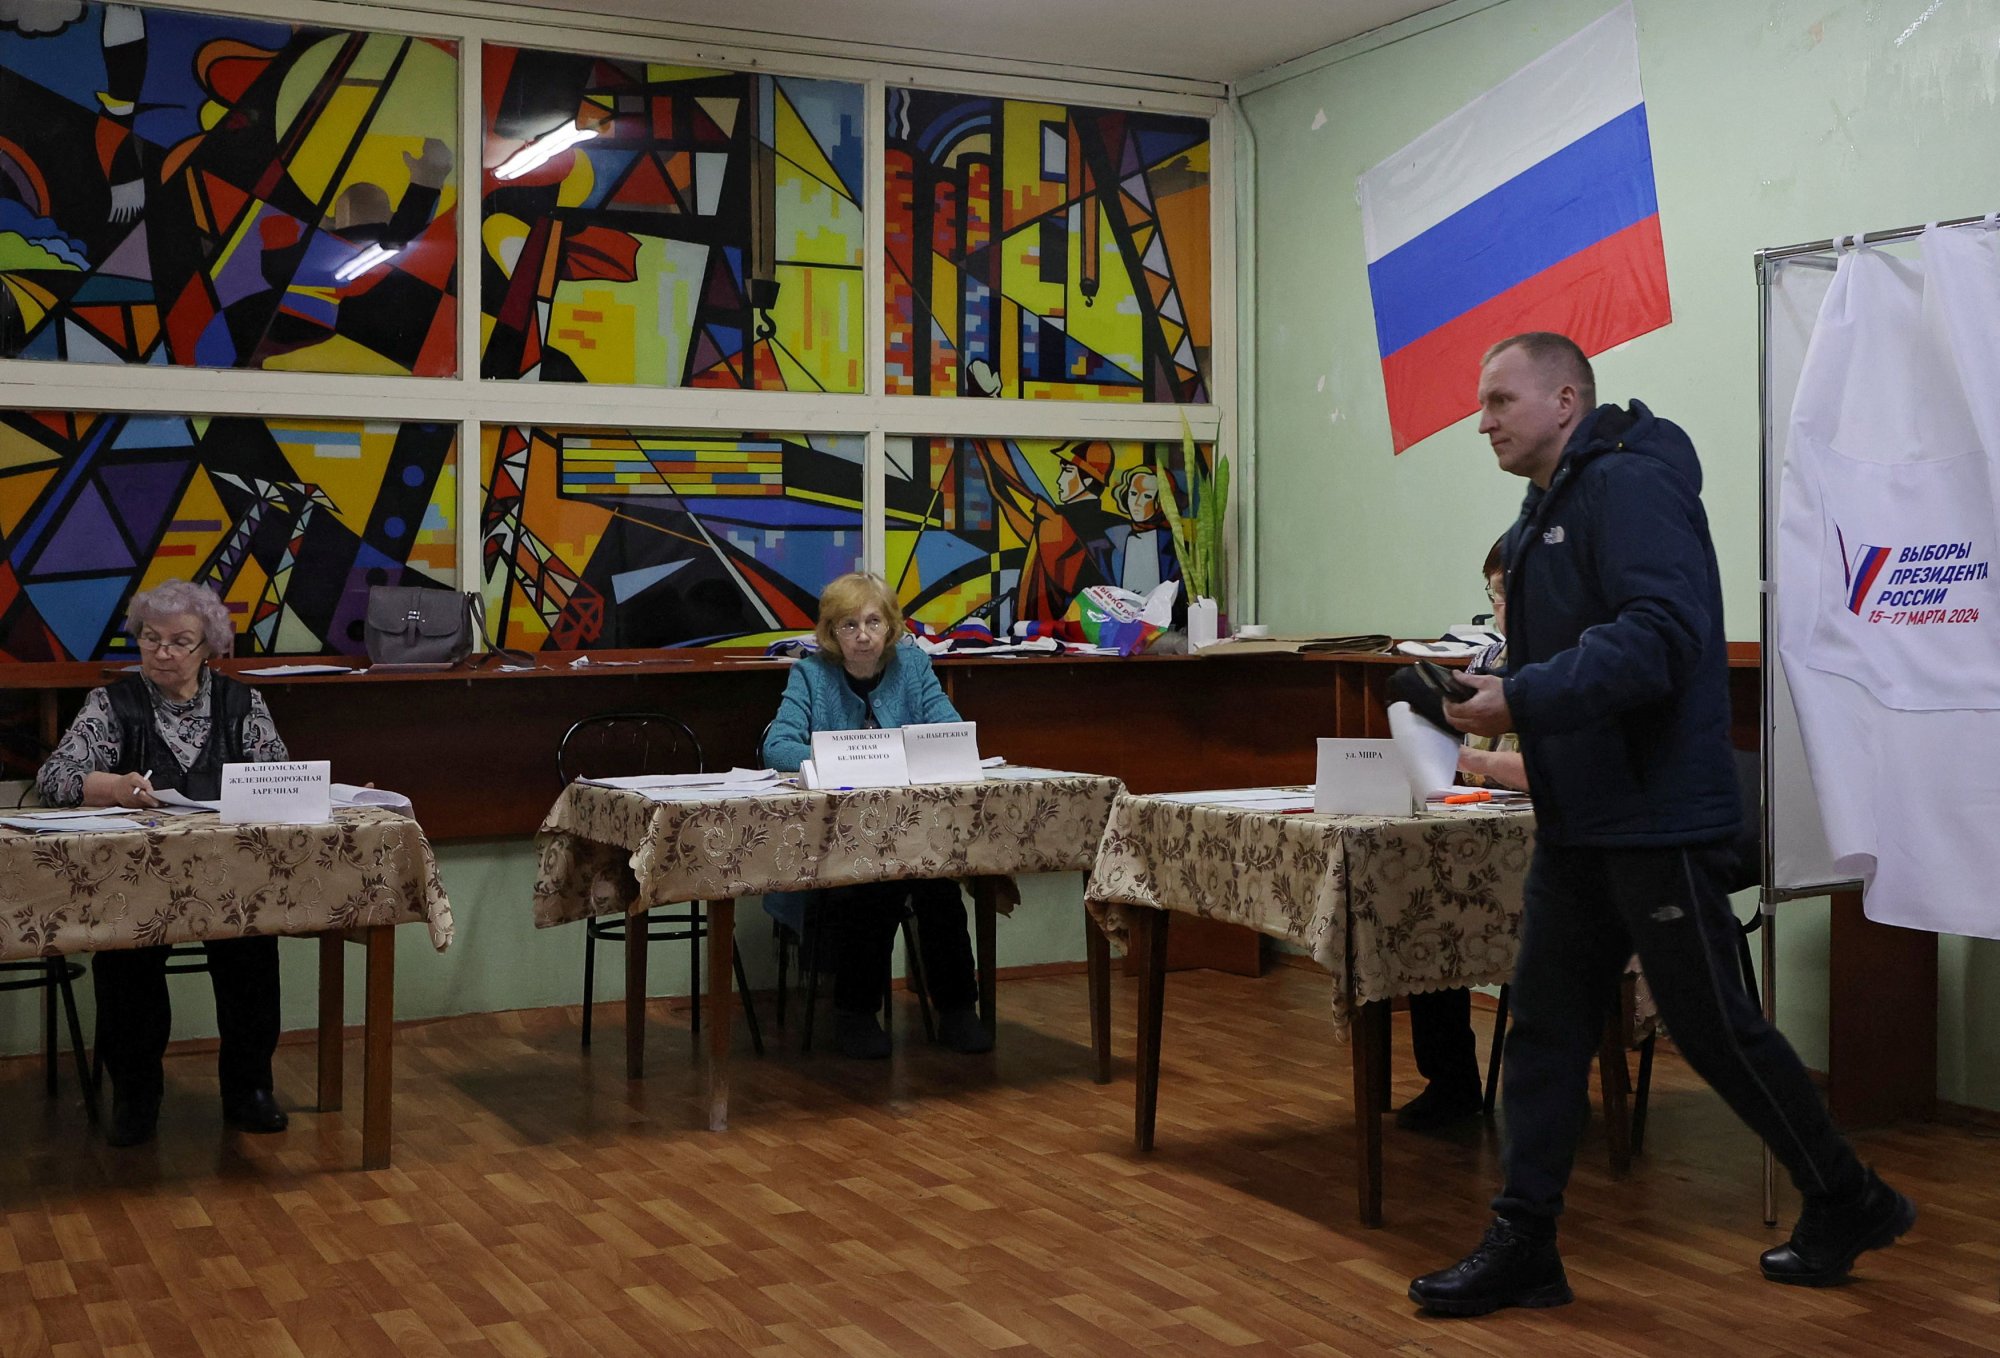 Ρωσία: «Όλα έχουν αποφασιστεί για εμάς» - Στις κάλπες οι Ρώσοι, χωρίς μεγάλο ενθουσιασμό